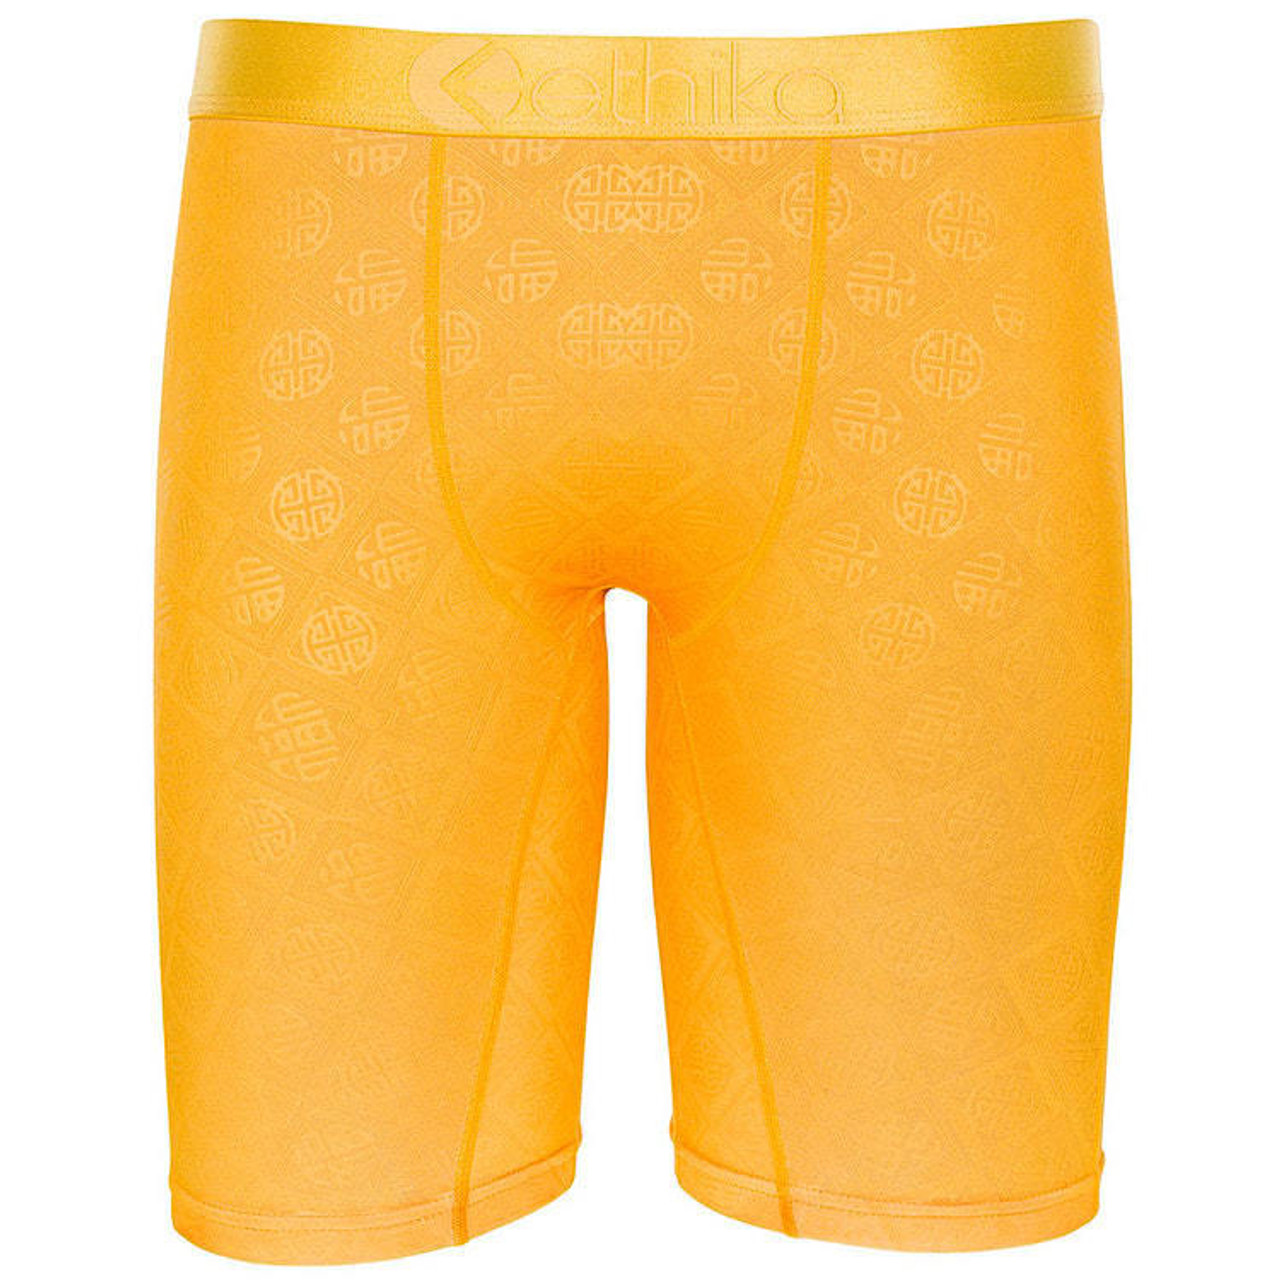 Ethika Underwear Website - Orange Hott Staple Boy